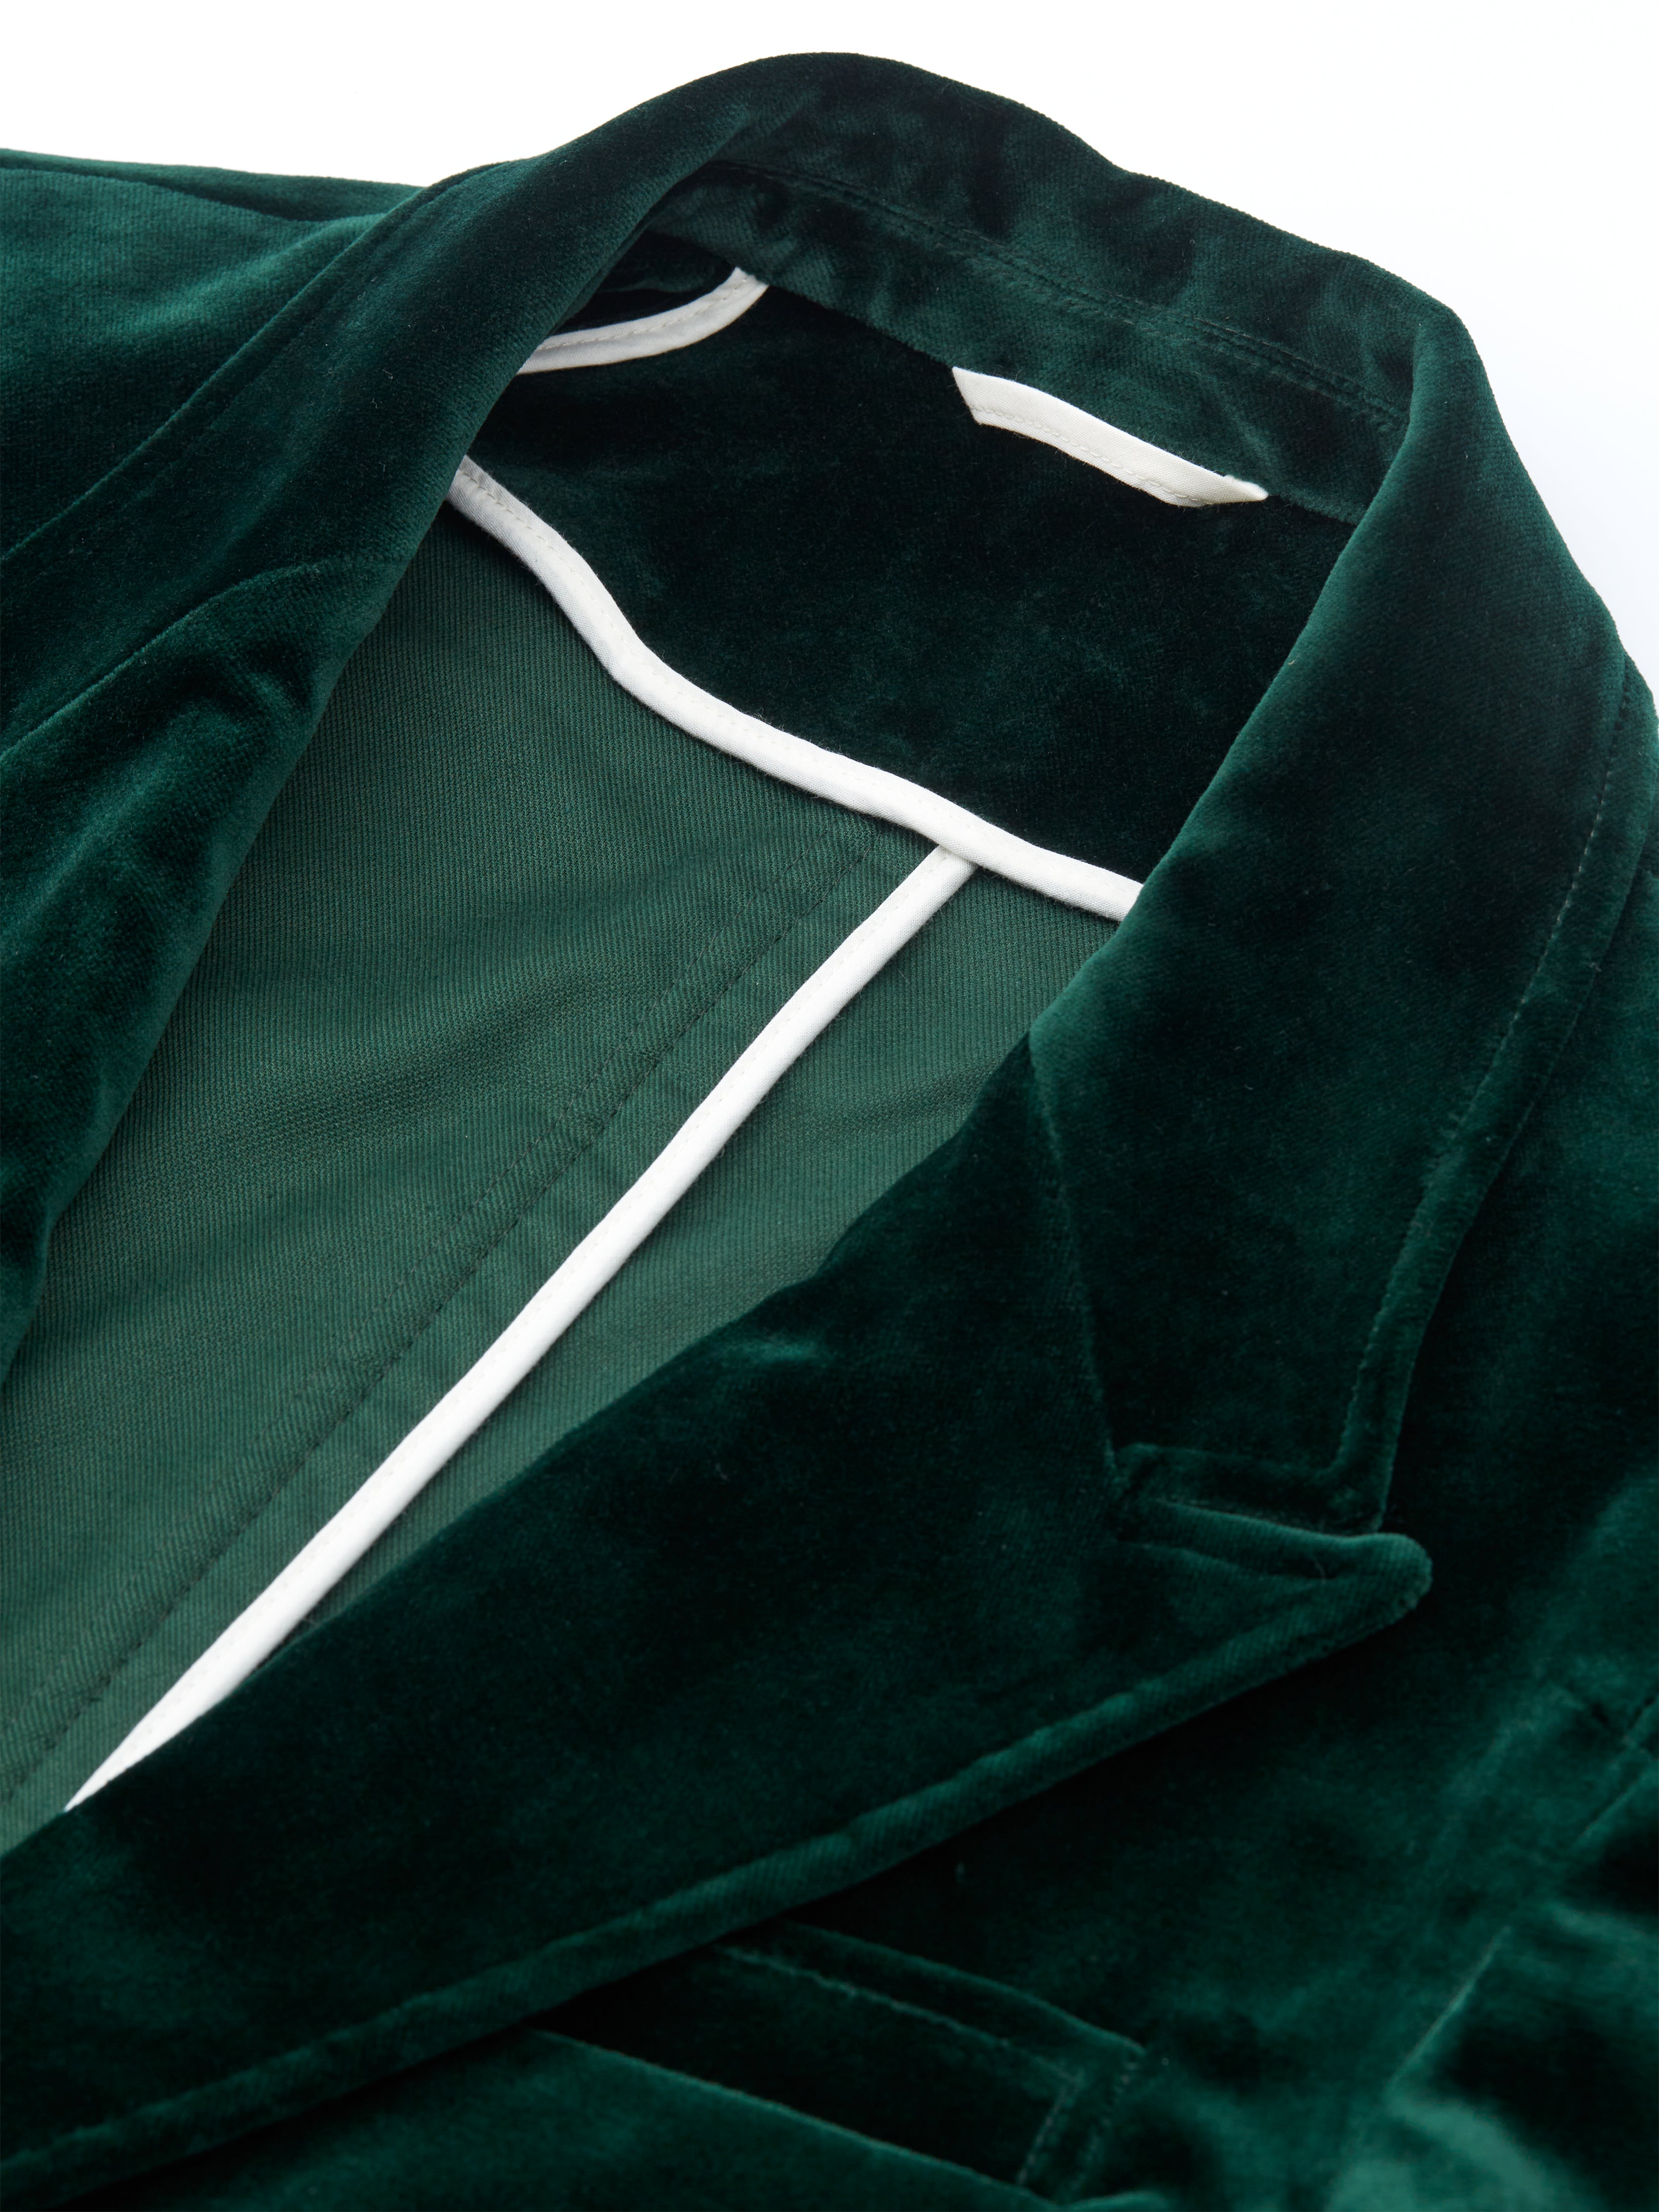 Green Velvet Mansfield Suit